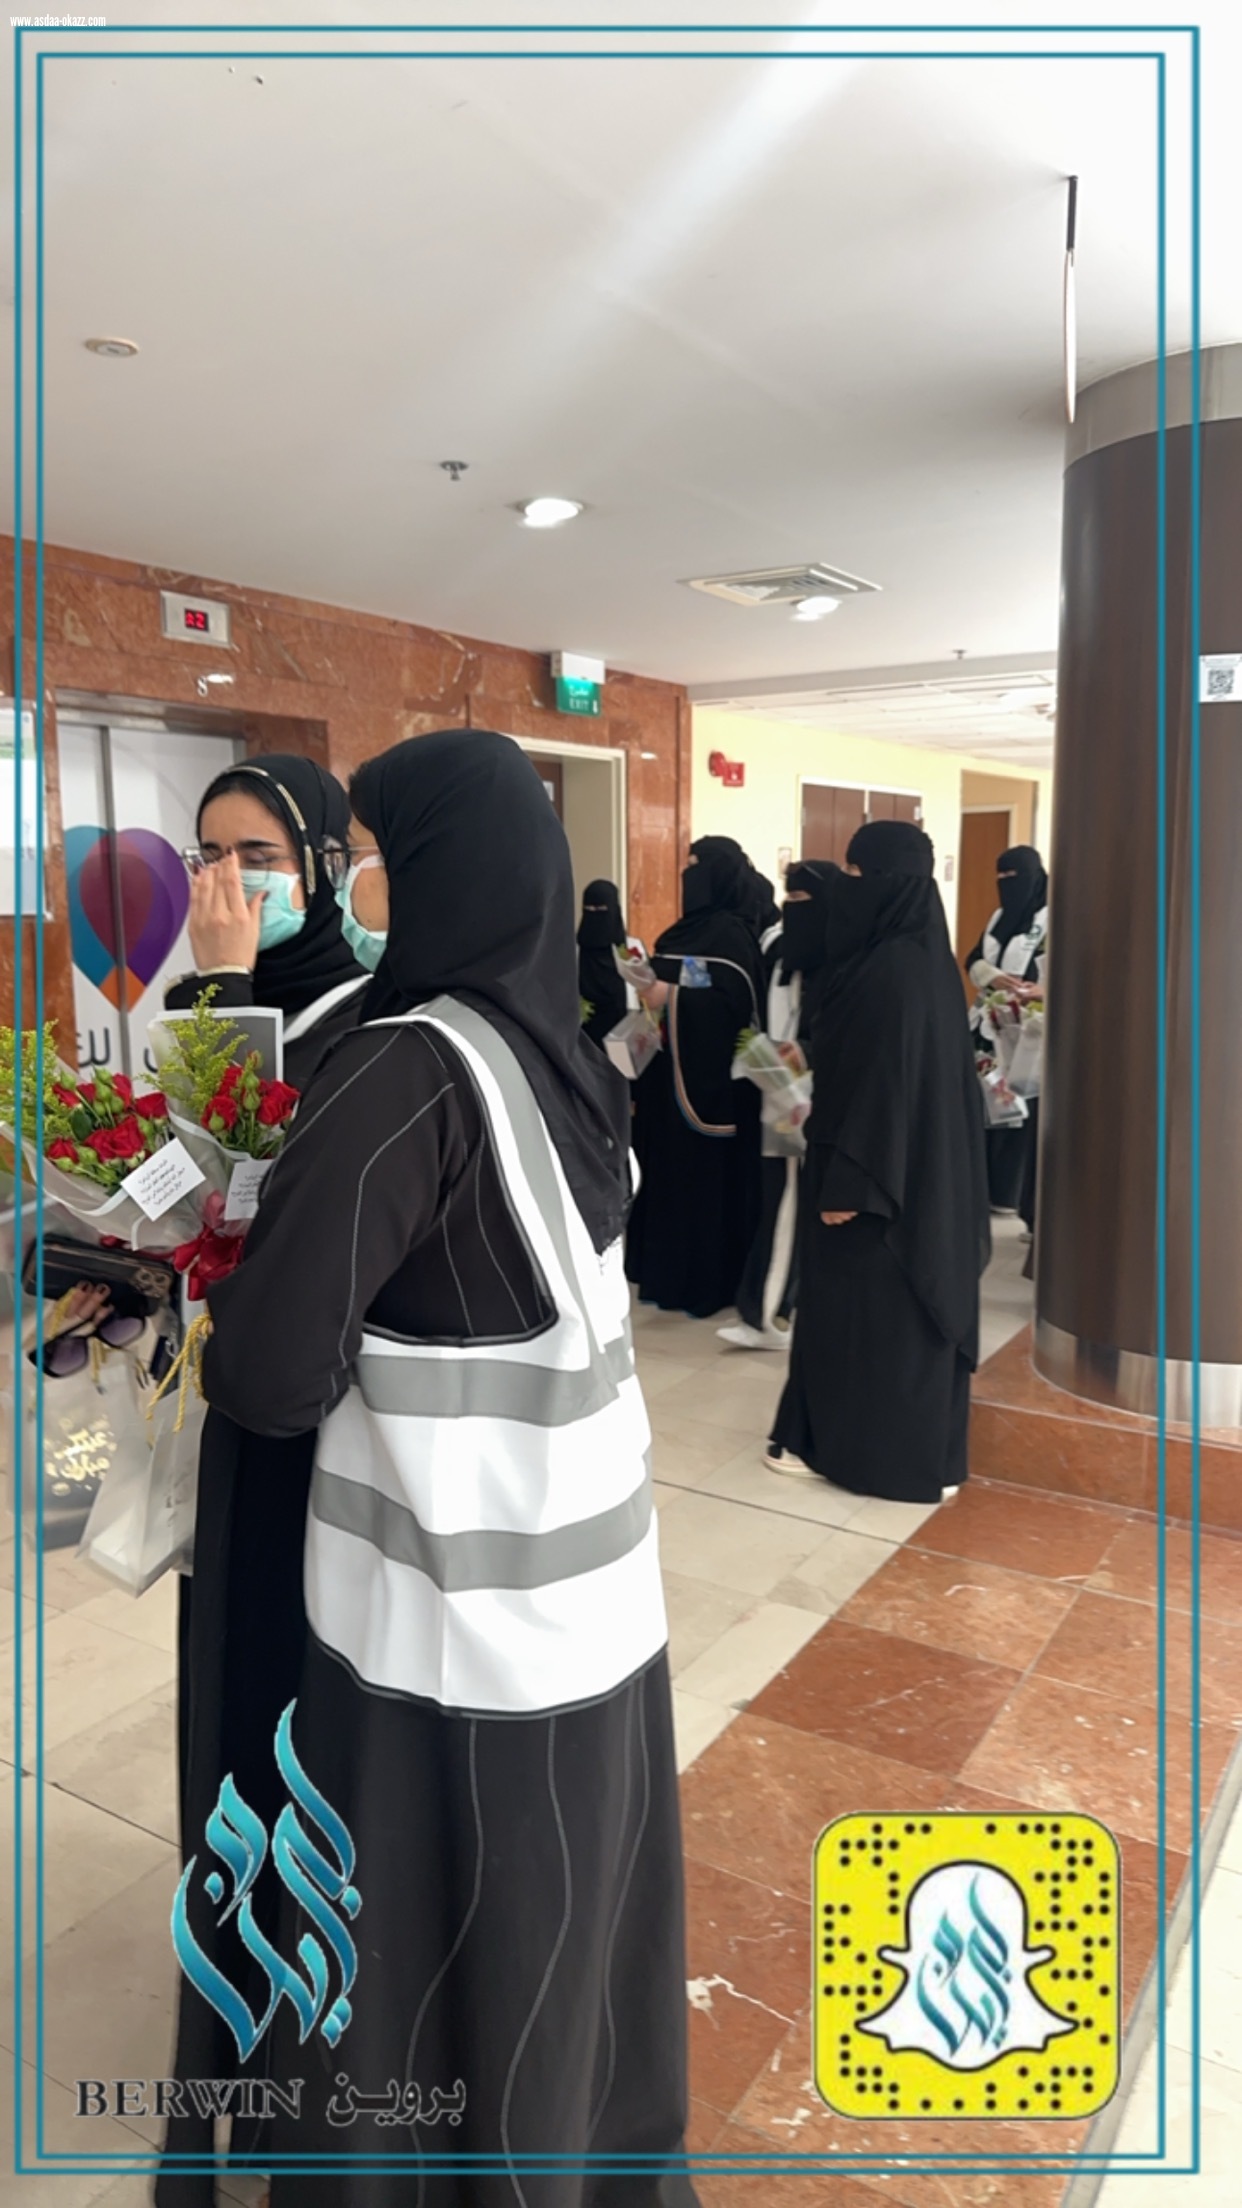 فريق بروين يعايد المرضى في مستشفى الأمير محمد بن عبدالعزيز 